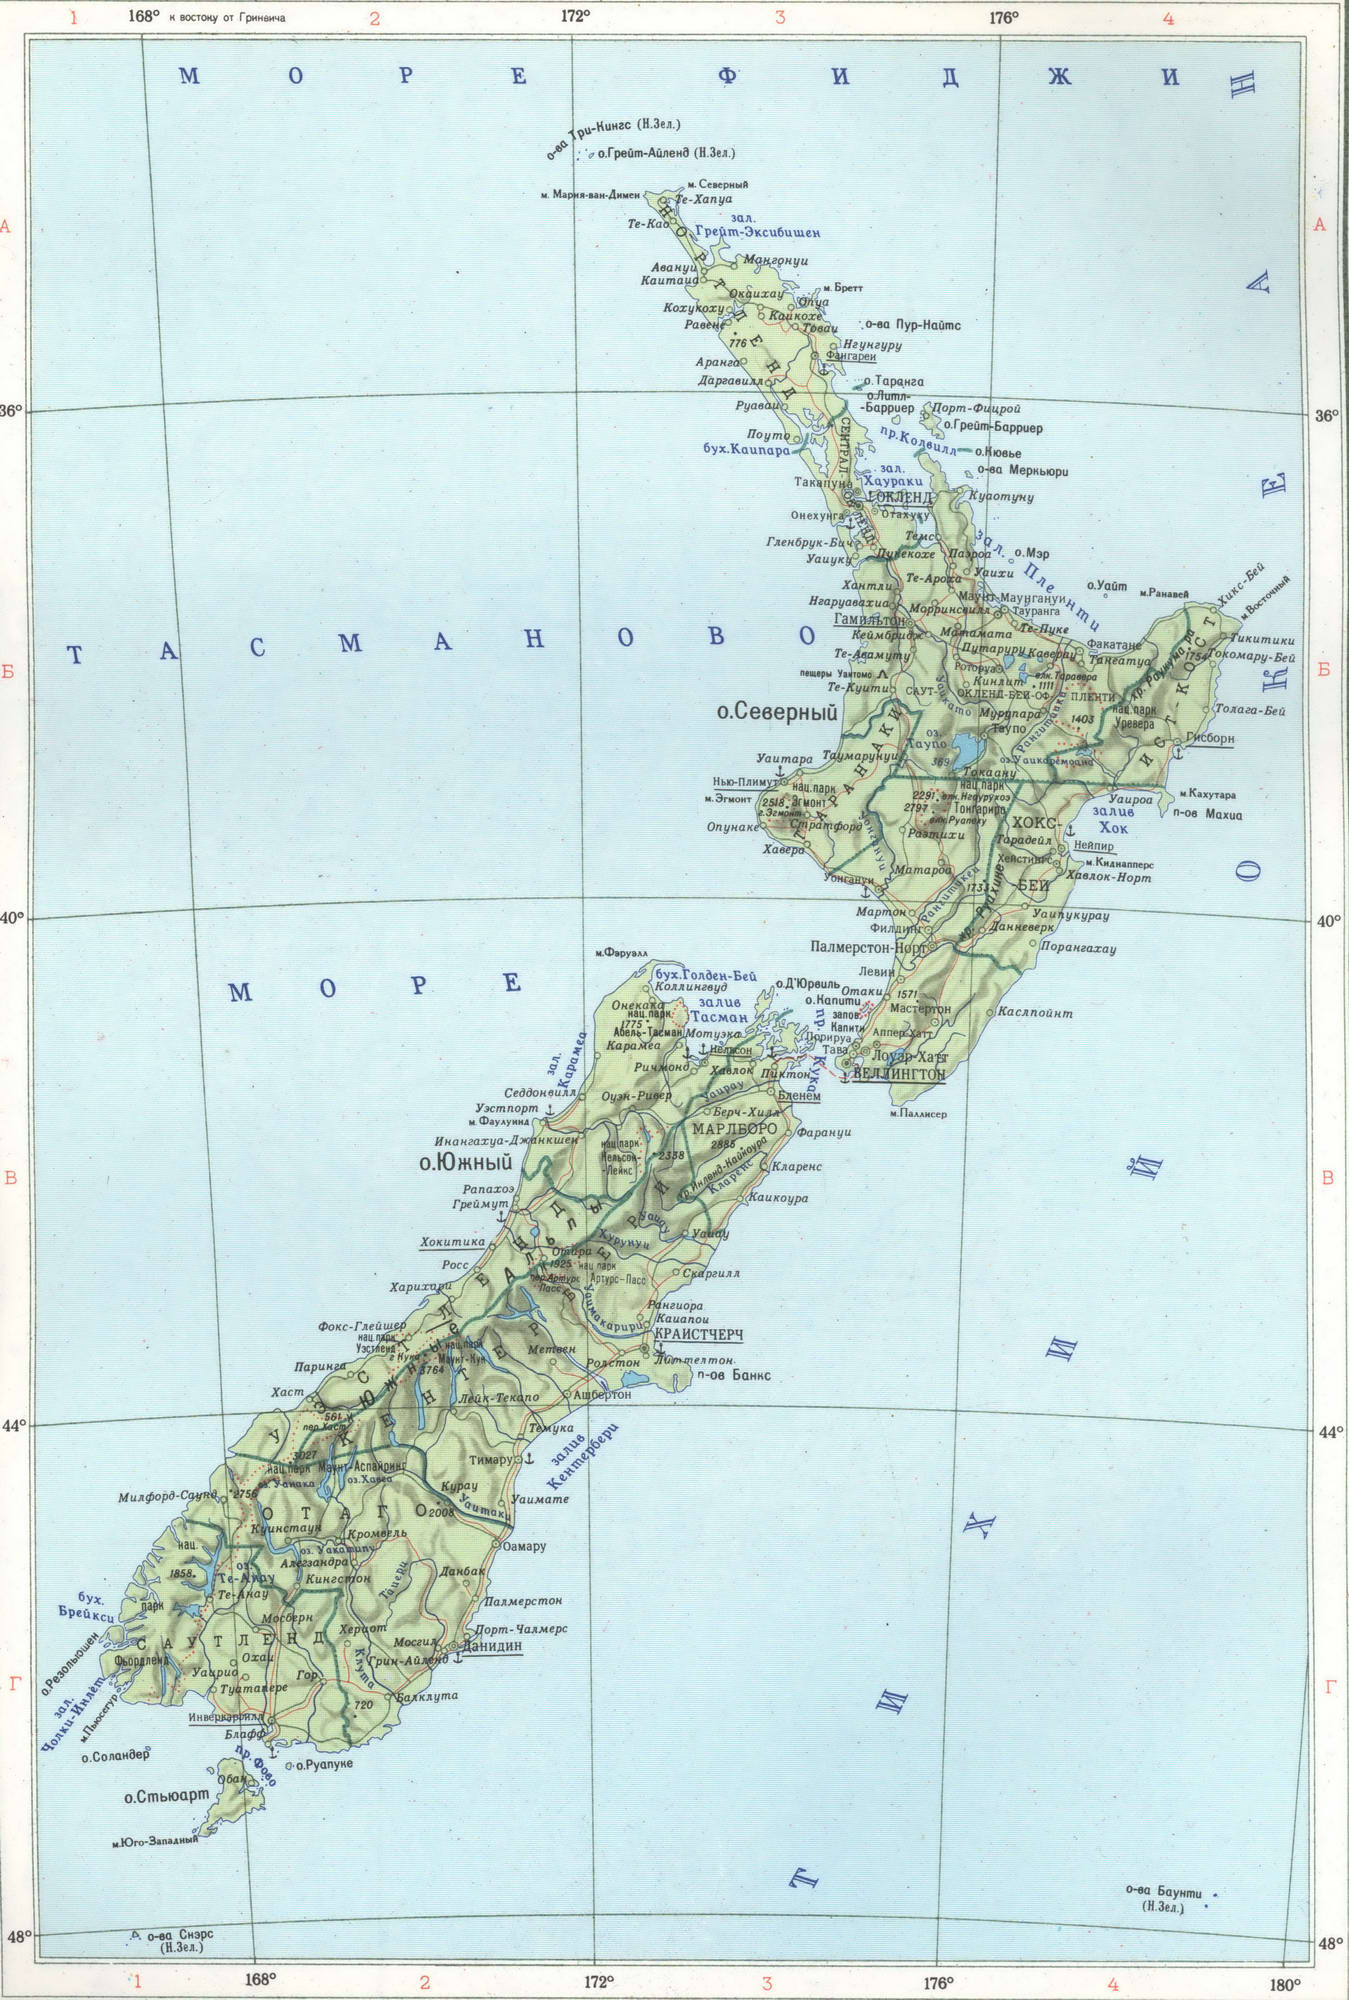 Подробная карта Новой Зеландии